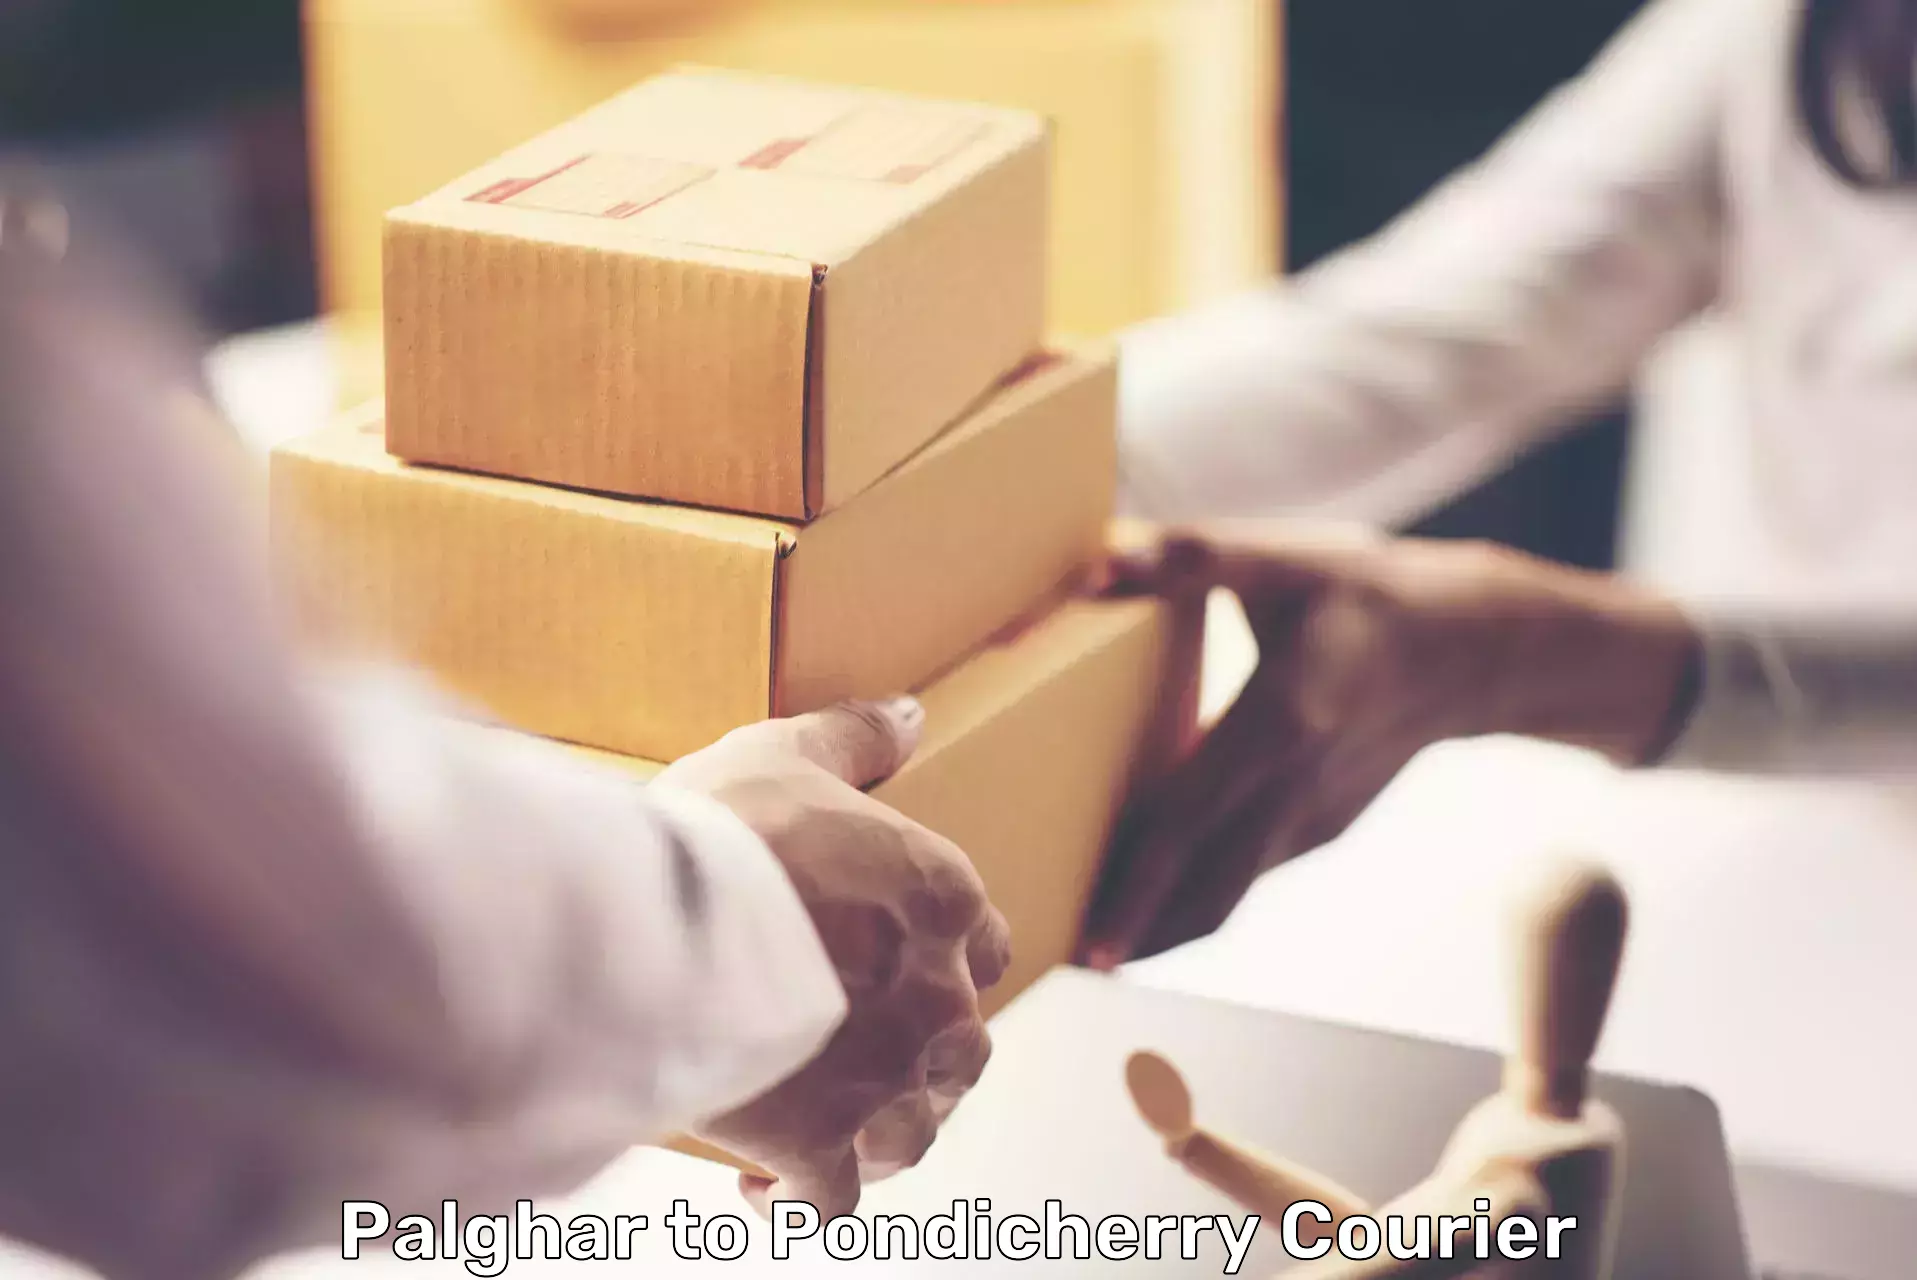 Courier service comparison Palghar to Pondicherry